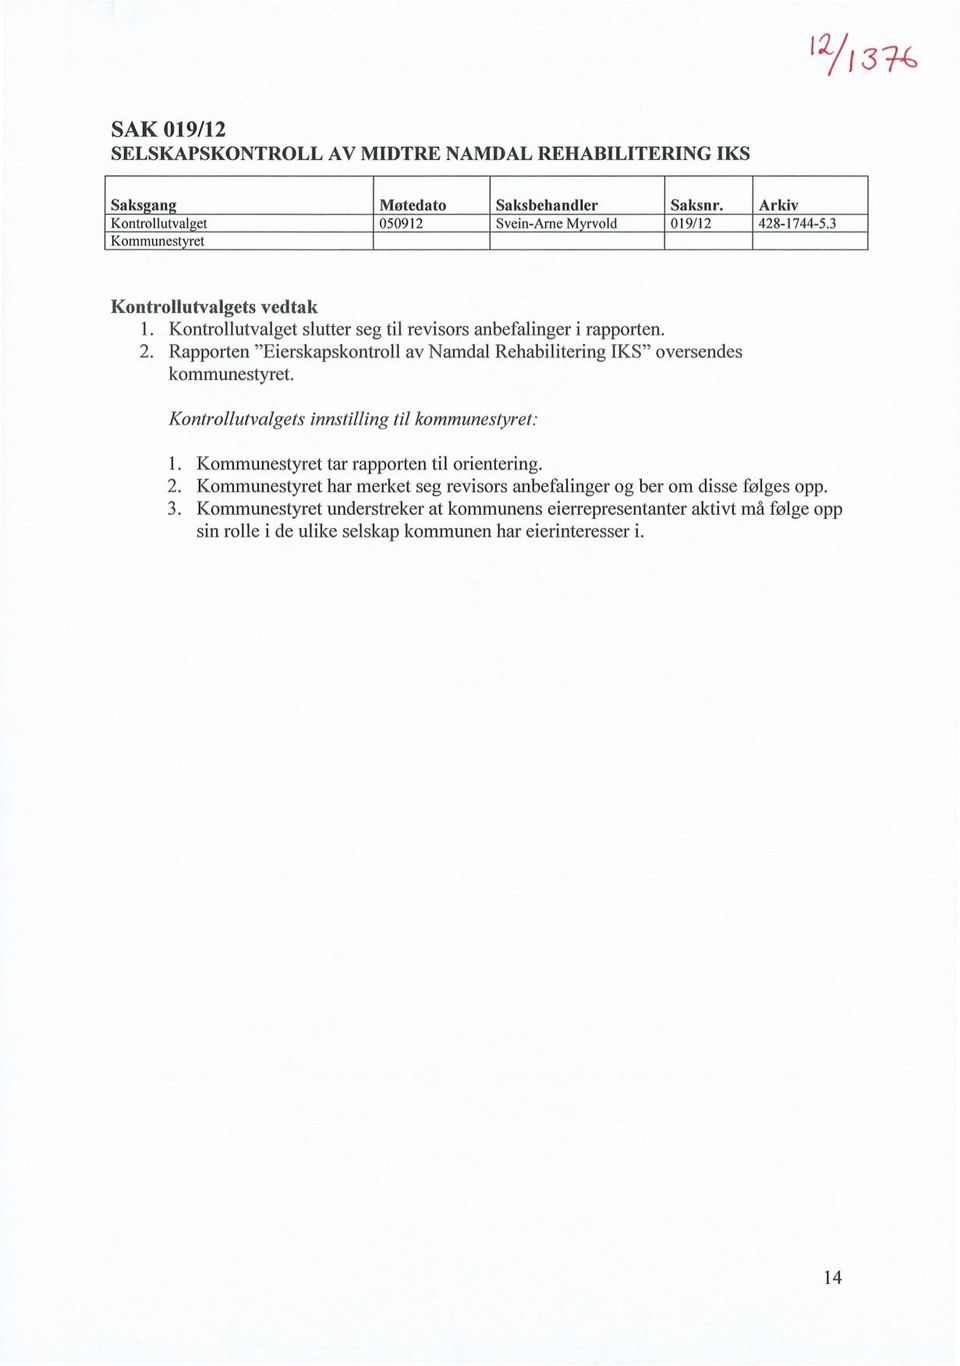 Kontrollutvalget slutter seg til revisors anbefalinger i rapporten. 2. Rapporten "Eierskapskontroll av Namdal Rehabilitering IKS" oversendes kommunestyret.